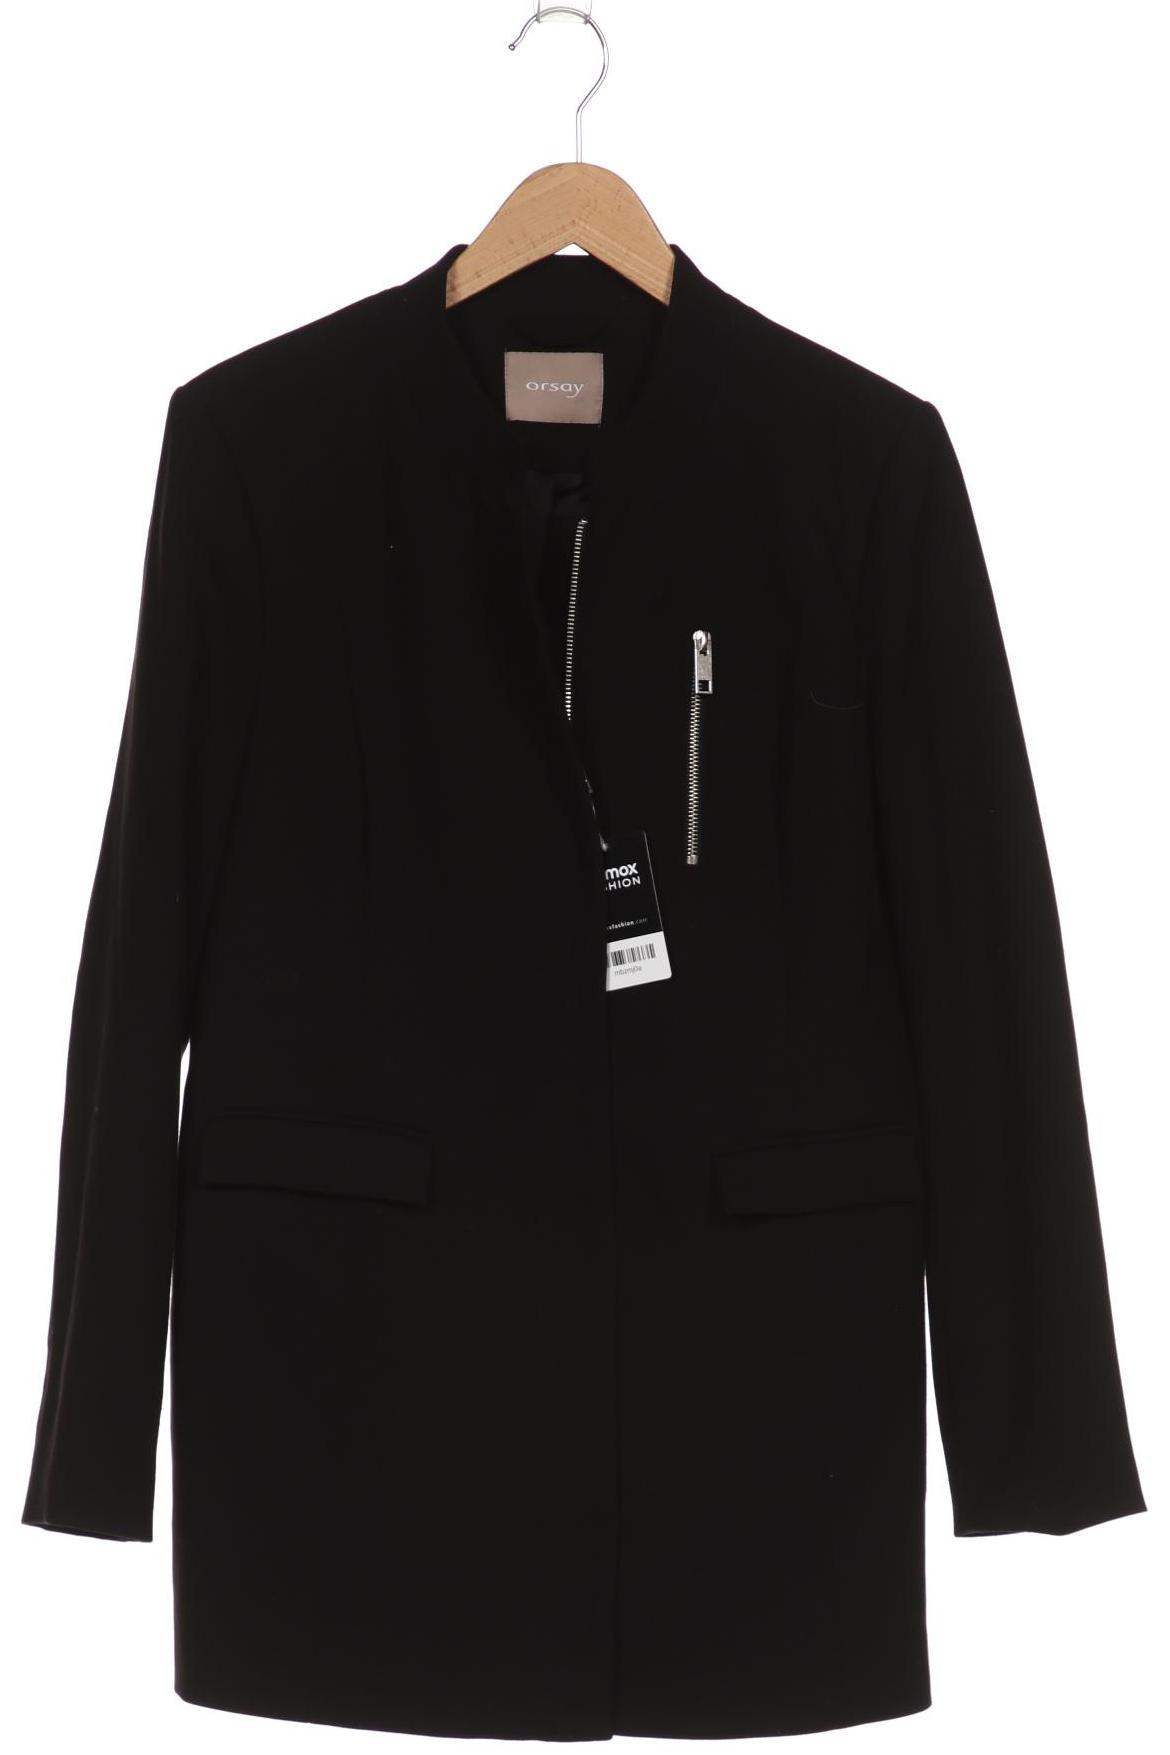 Orsay Damen Mantel, schwarz von Orsay